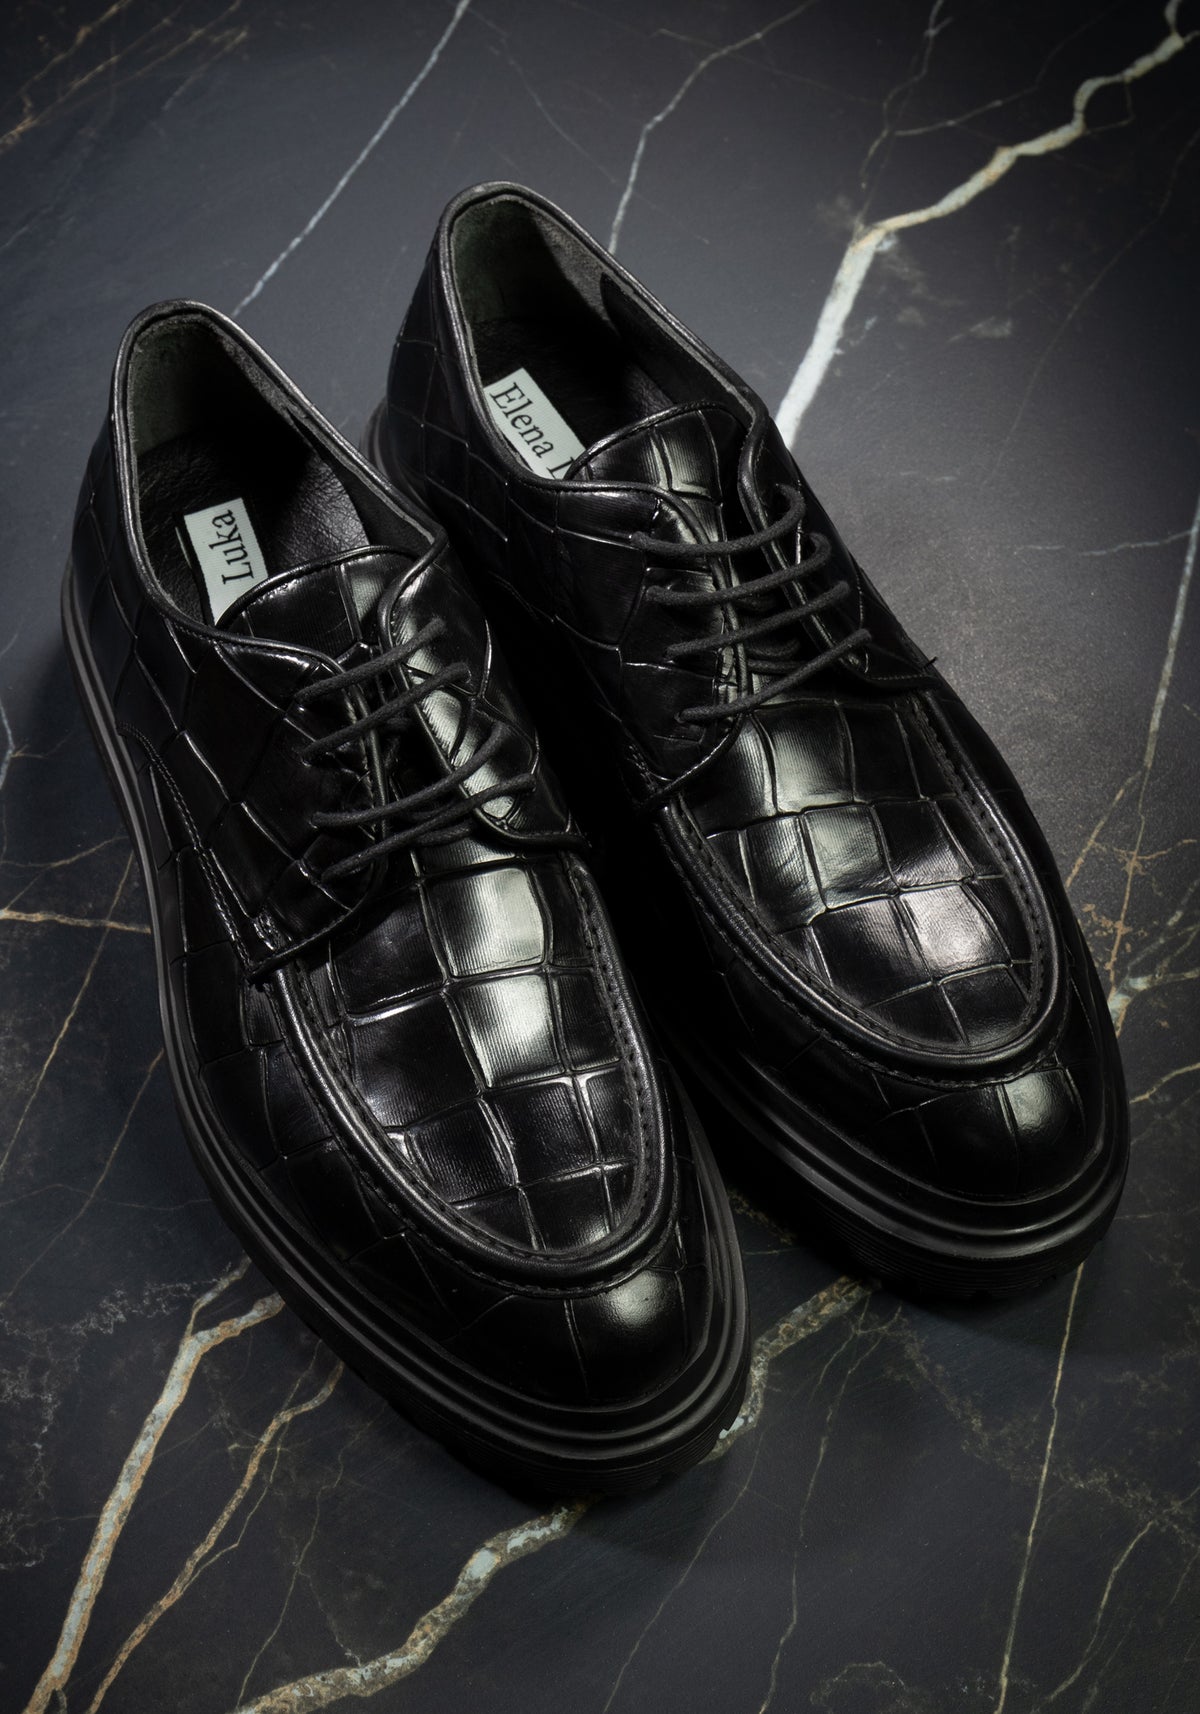 Shoes black